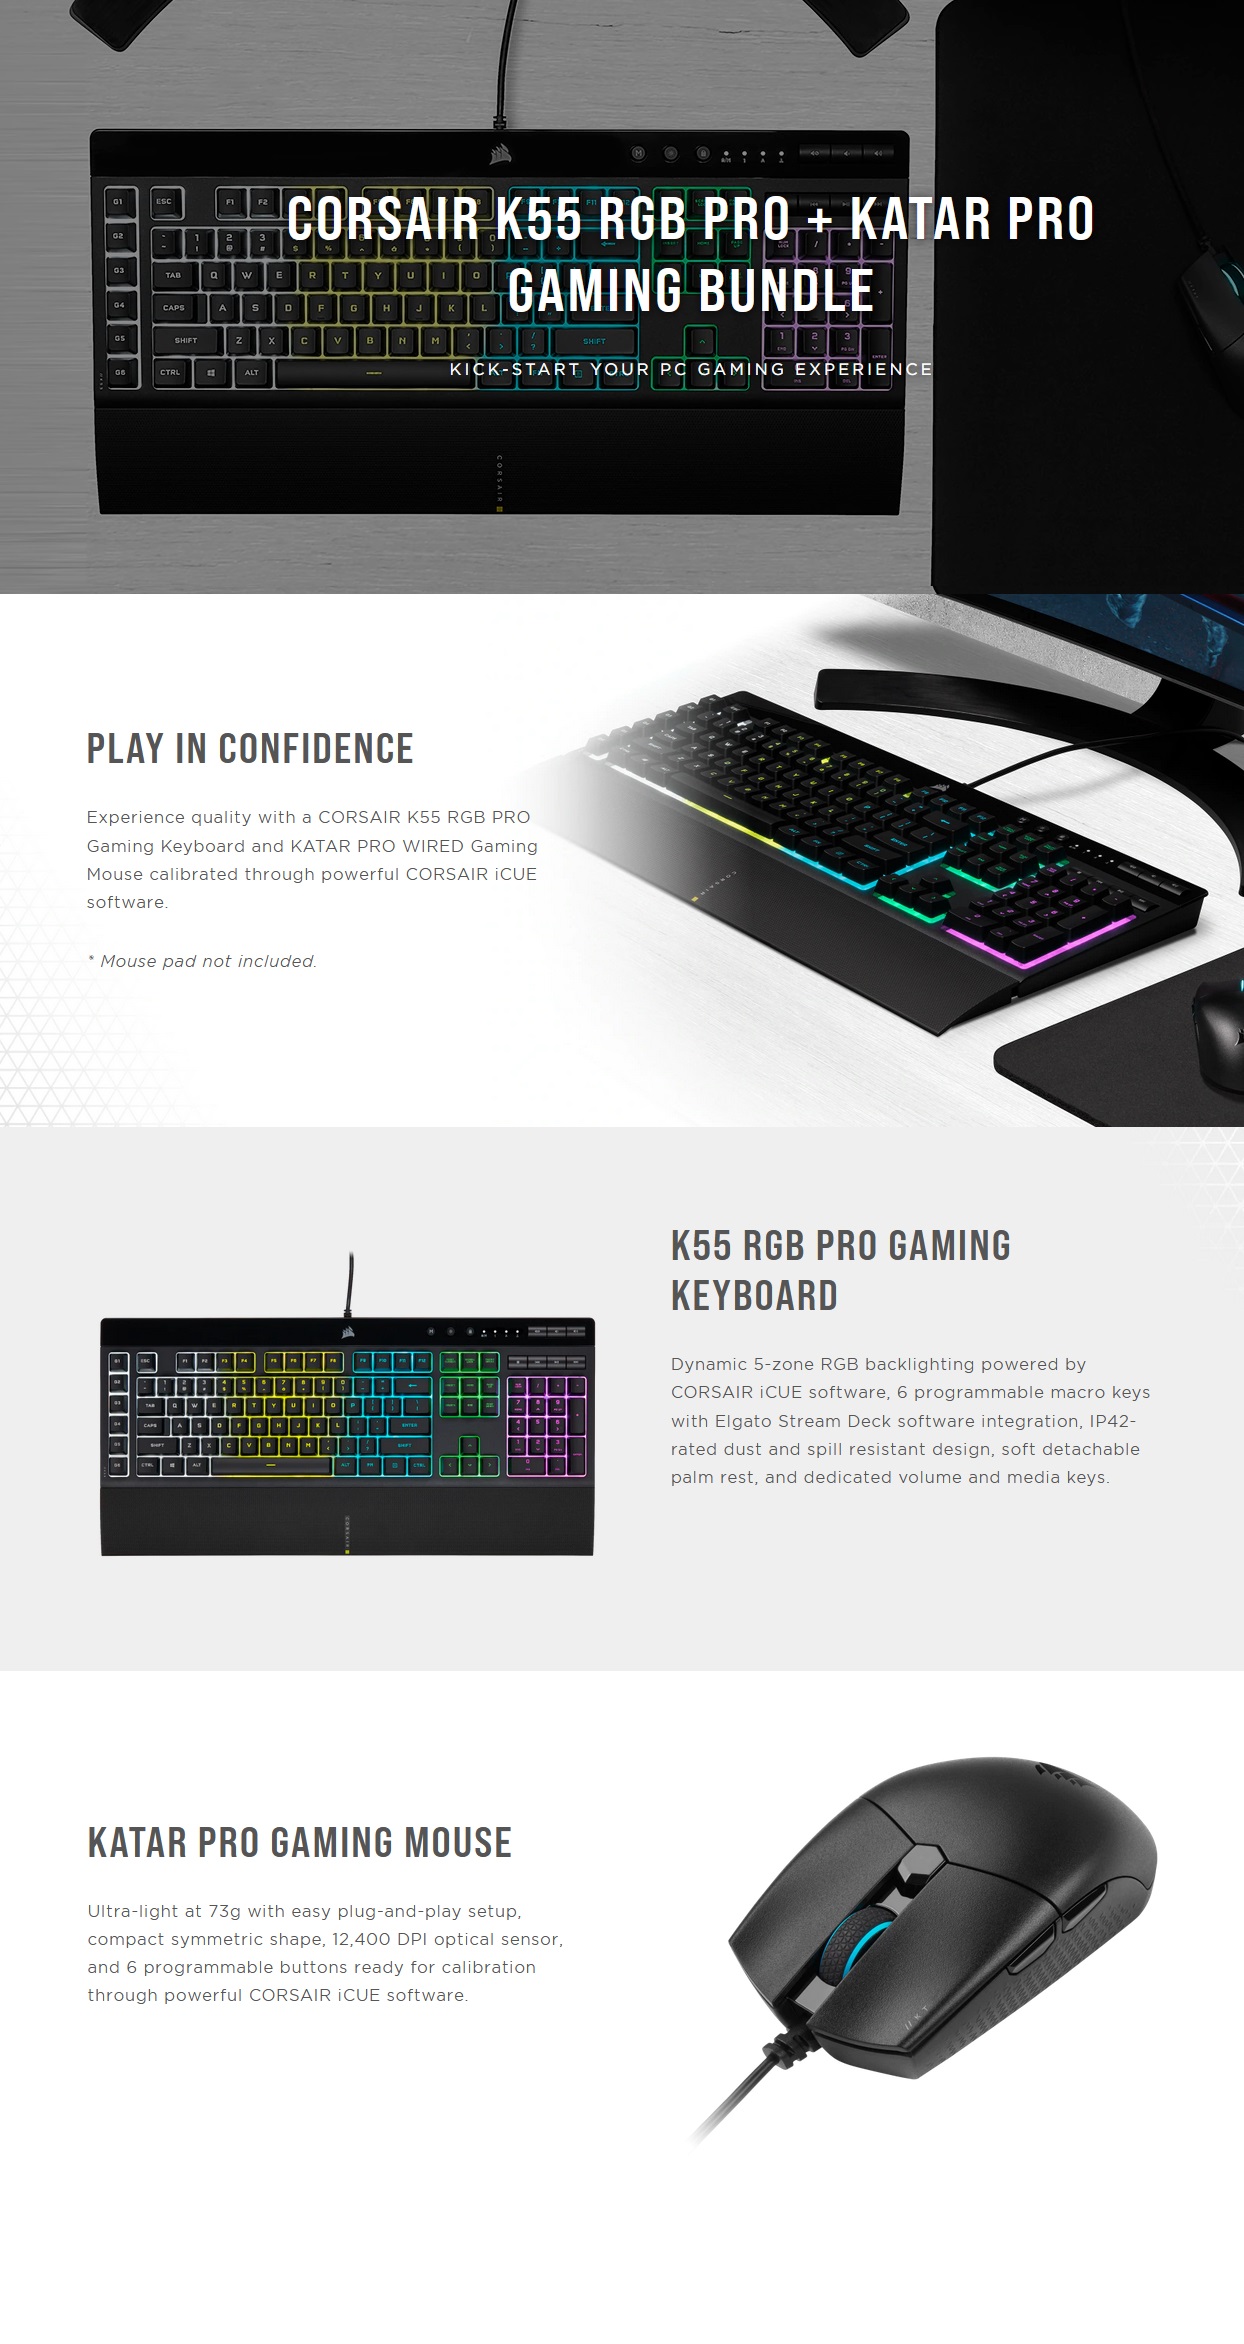  <b>Gaming Keyboard & Mouse:</b> Corsair K55 RGB PRO + KATAR PRO Gaming Wired RGB Keyboard & Mouse Bundle  